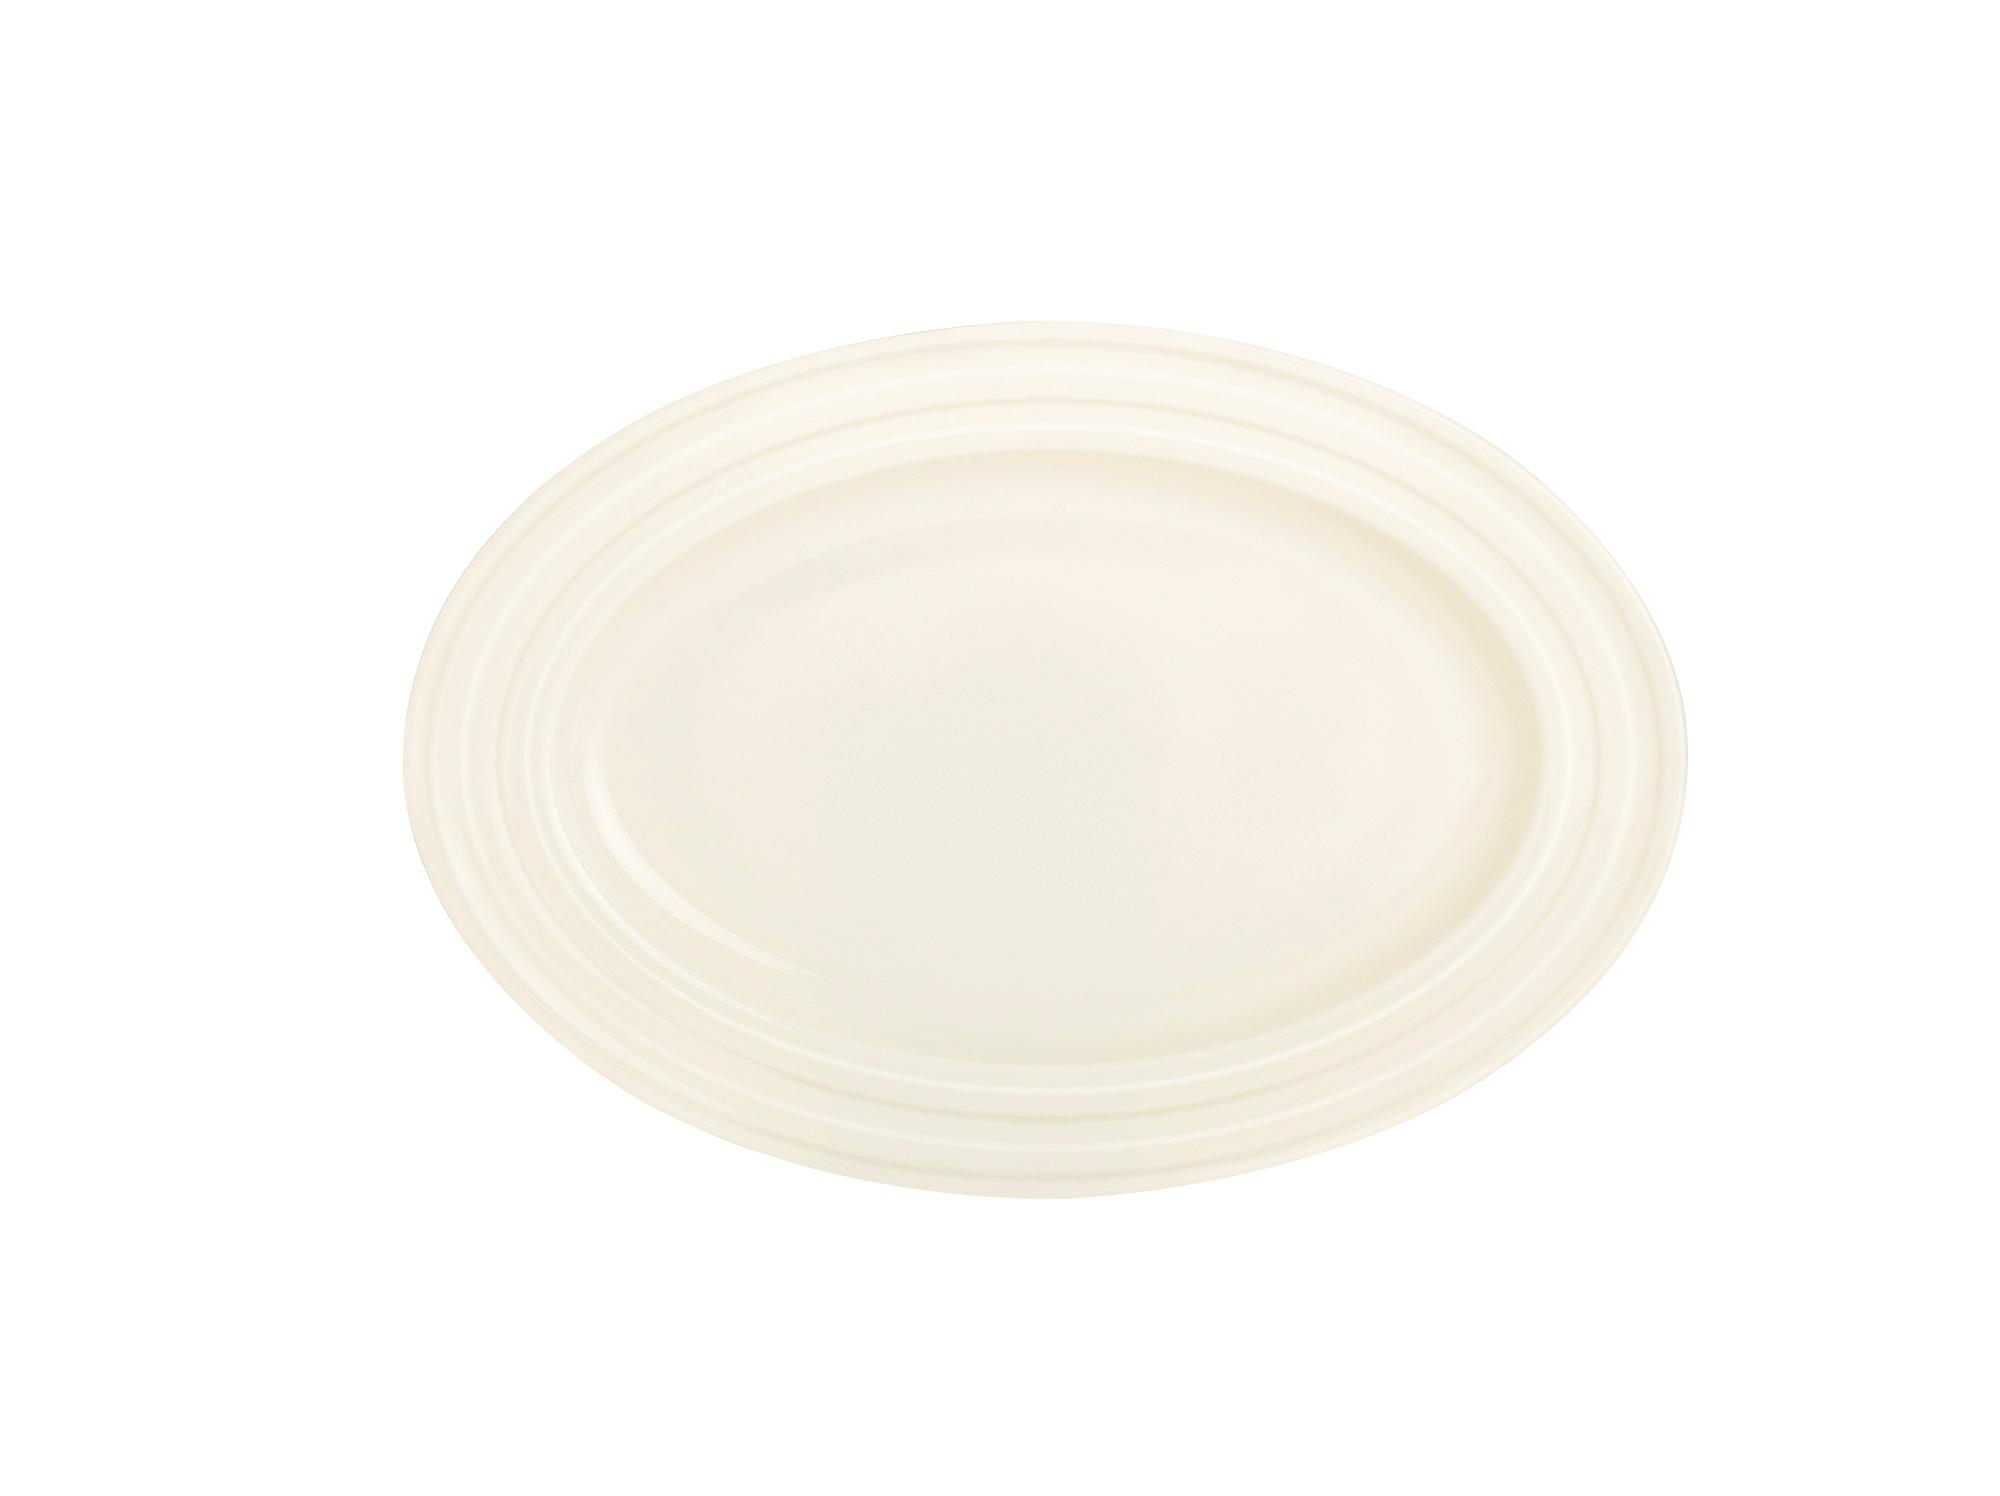 Perla oval dish, 290x200mm